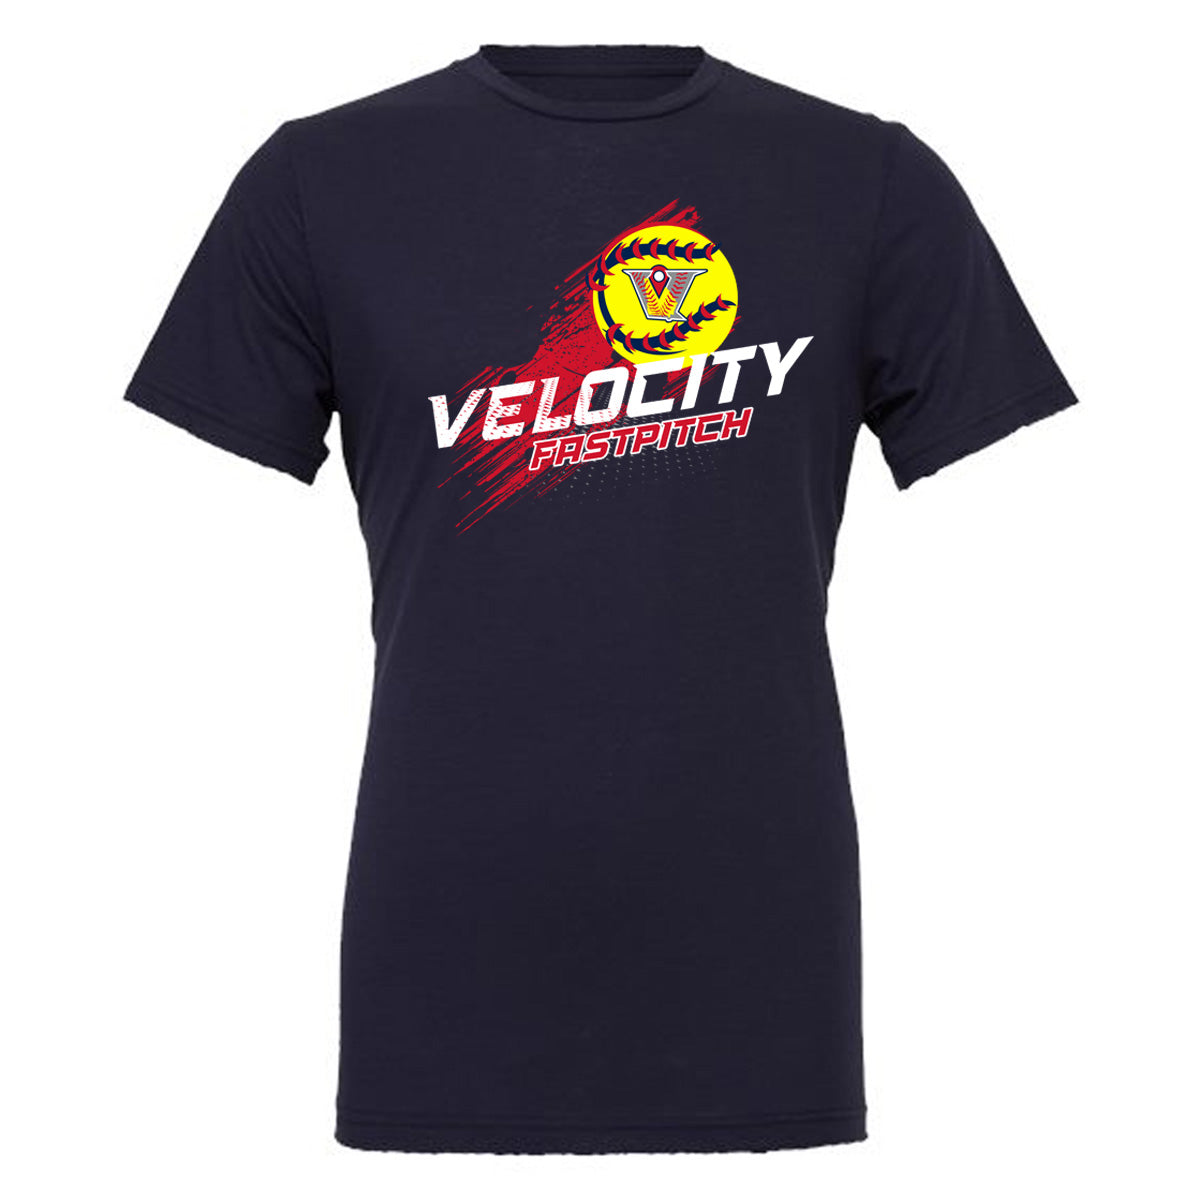 Velo FP - Velocity Fastpitch Streak - Navy (Tee/Hoodie/Sweatshirt) - Southern Grace Creations